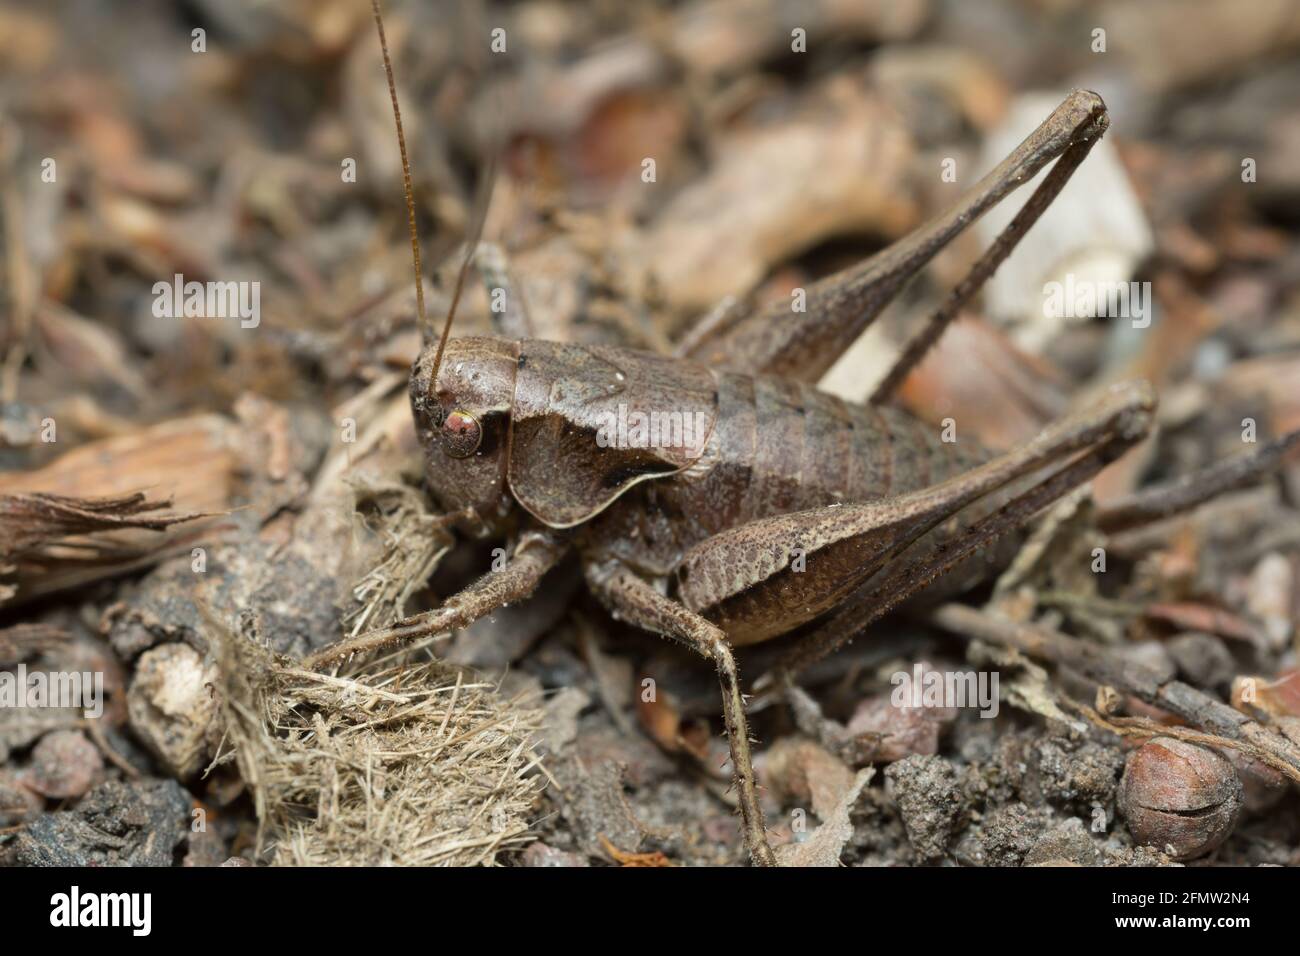 Female dark bush-cricket, Pholidoptera griseoaptera on ground, macro photo Stock Photo